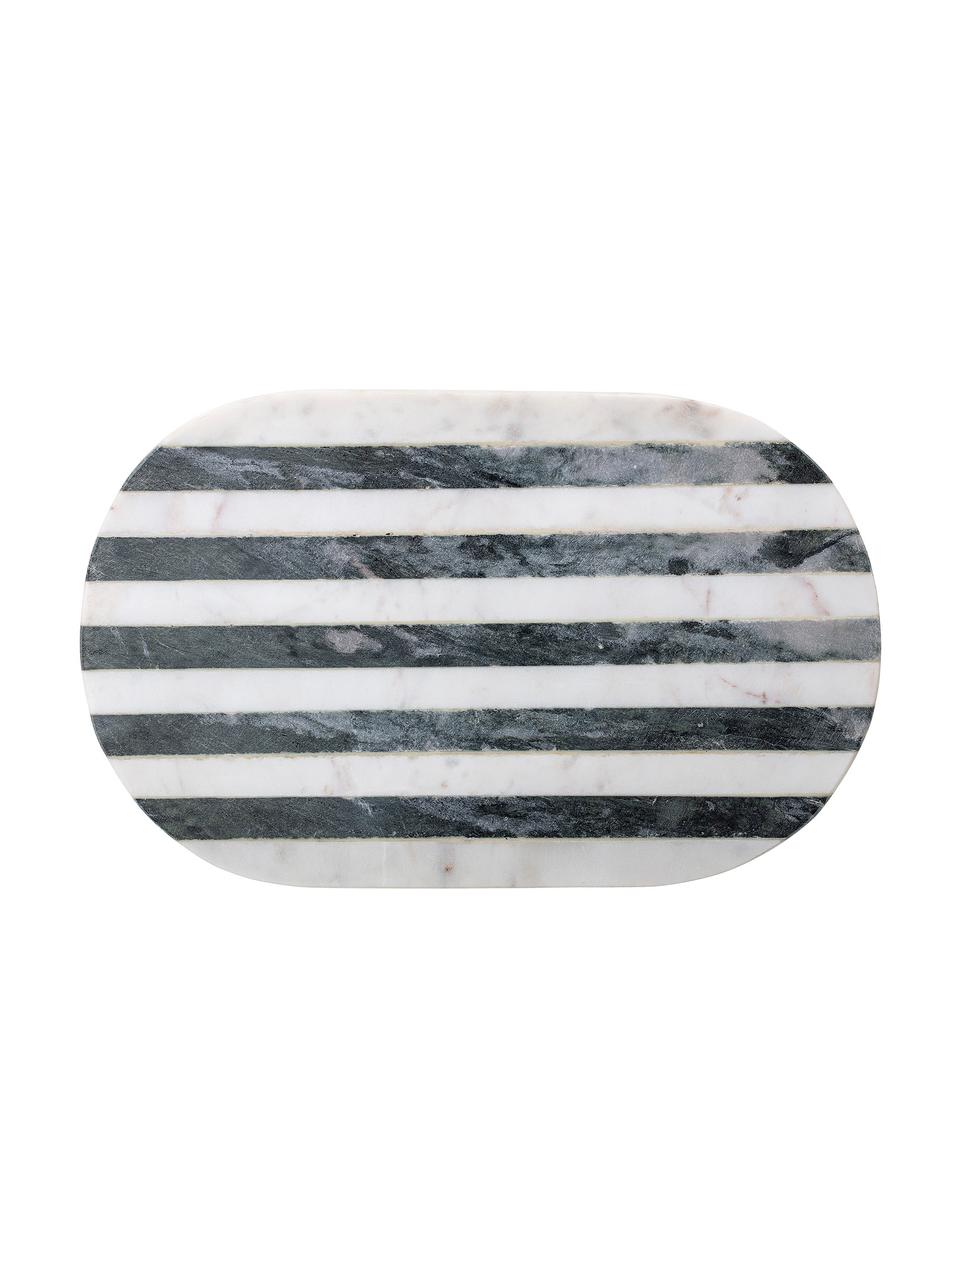 Marmeren snijplank Stripes, Marmer, Zwart, wit, L 37 x B 23 cm